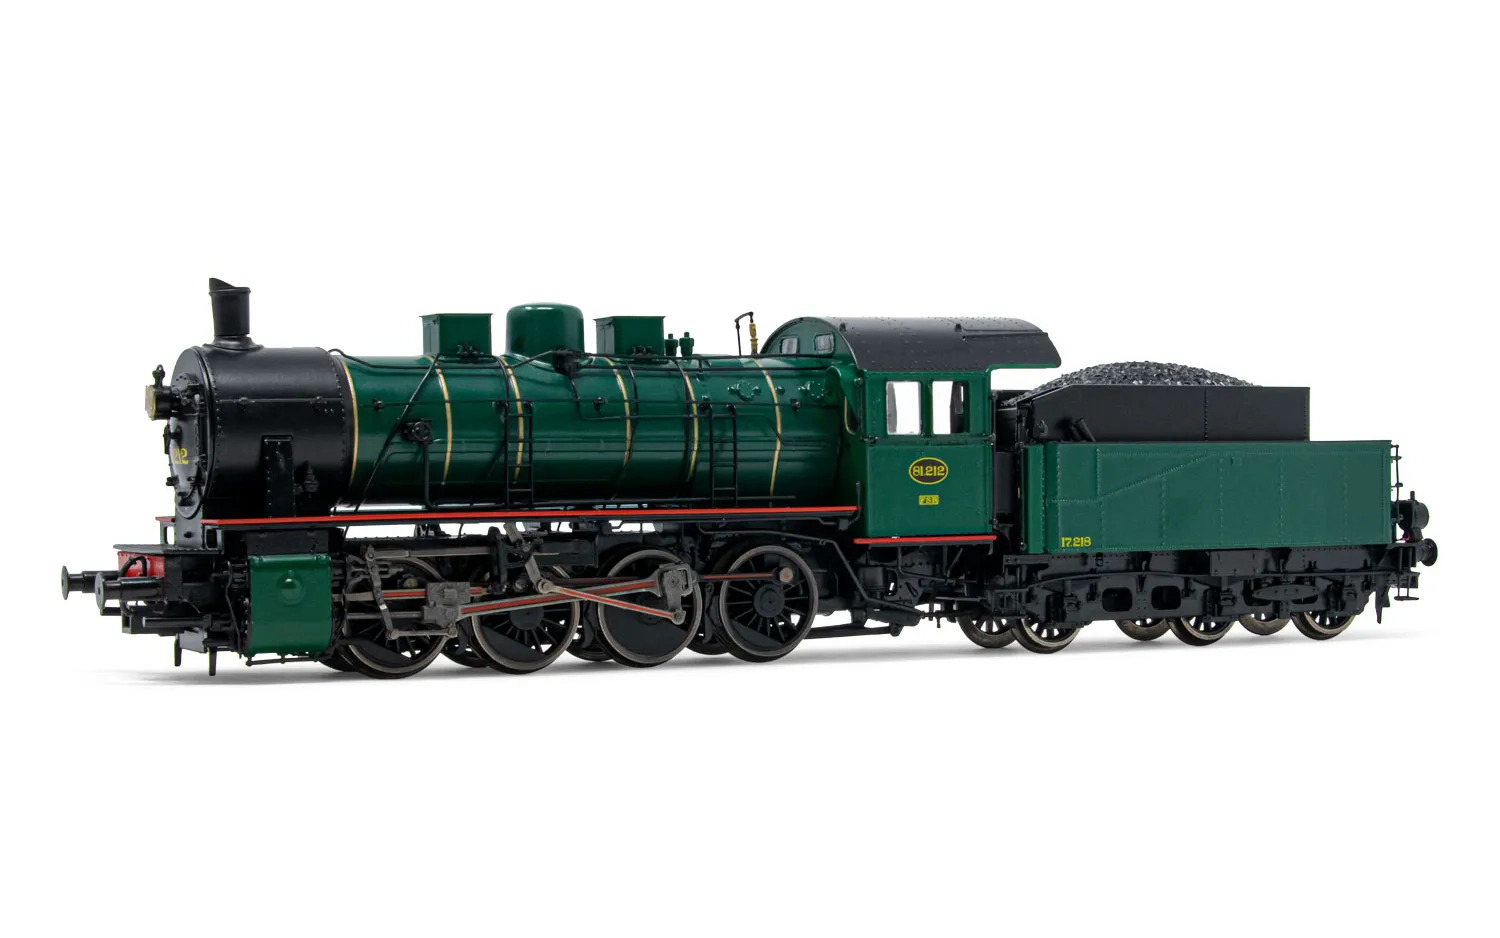 SNCB/NMBS, locomotive à vapeur classe 81, chaudière avec 3 coupoles symétriques, livrée vert foncé, ép. III